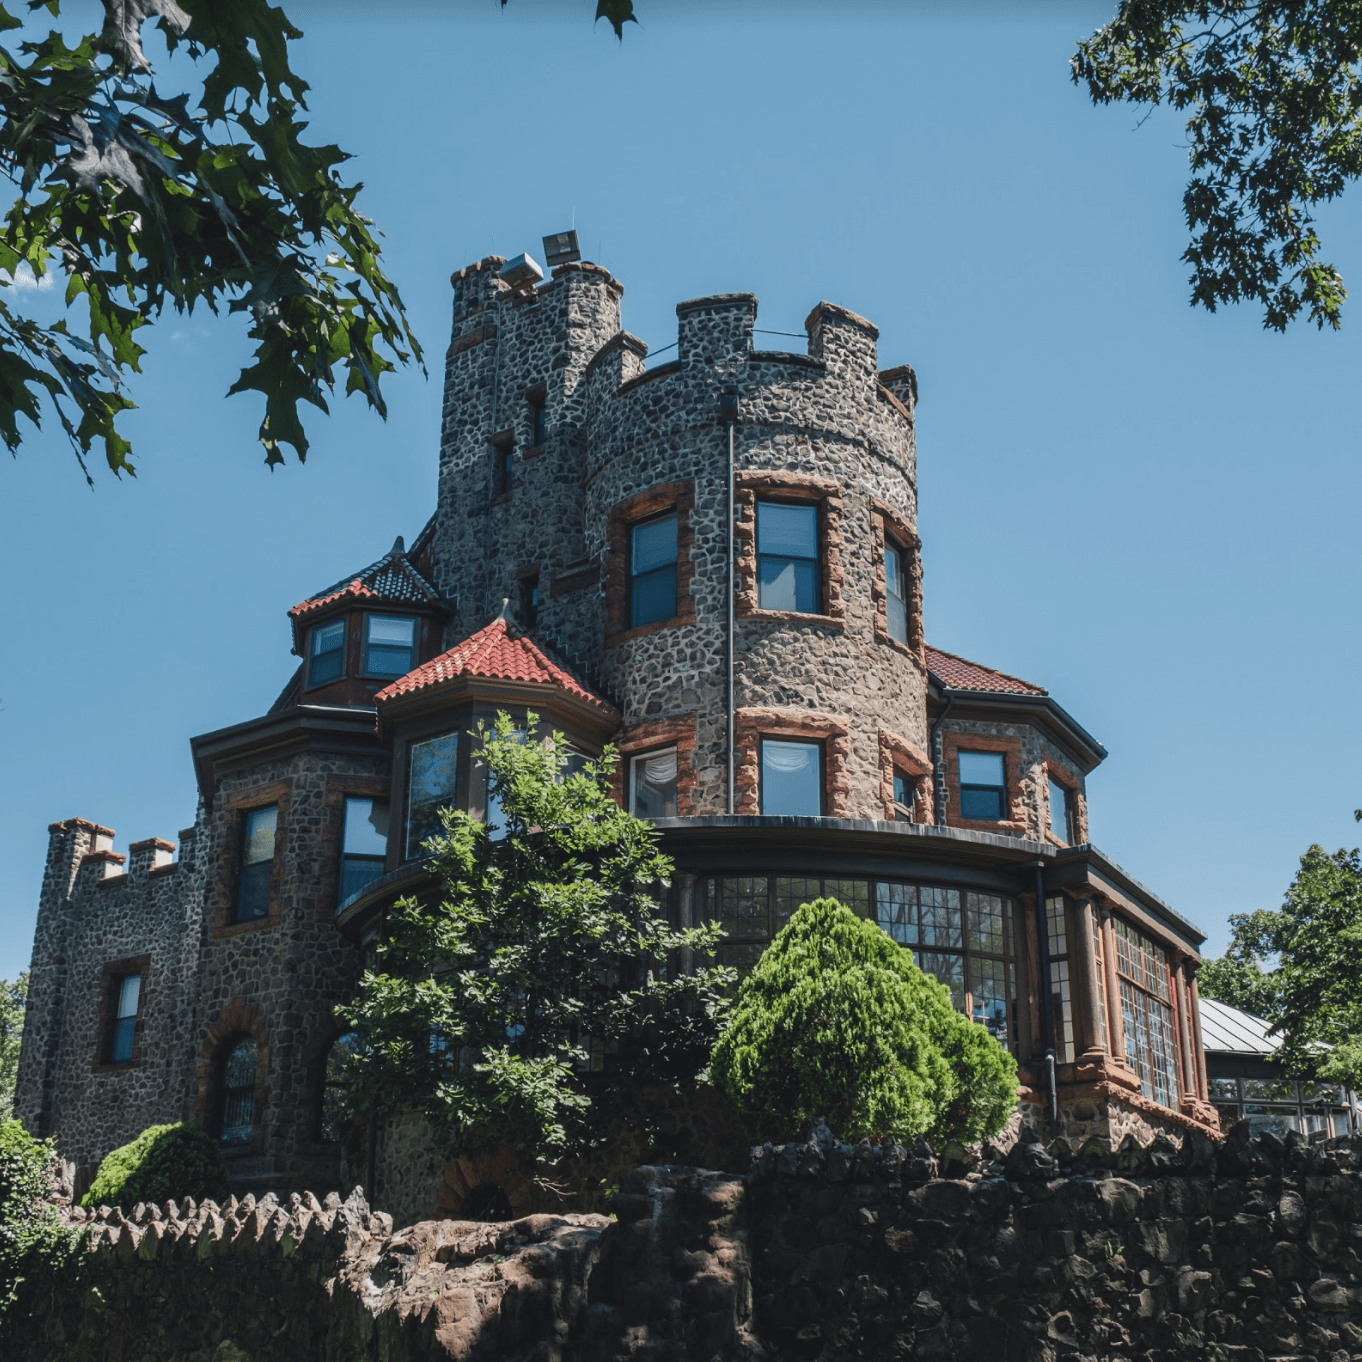 Kip’s Castle